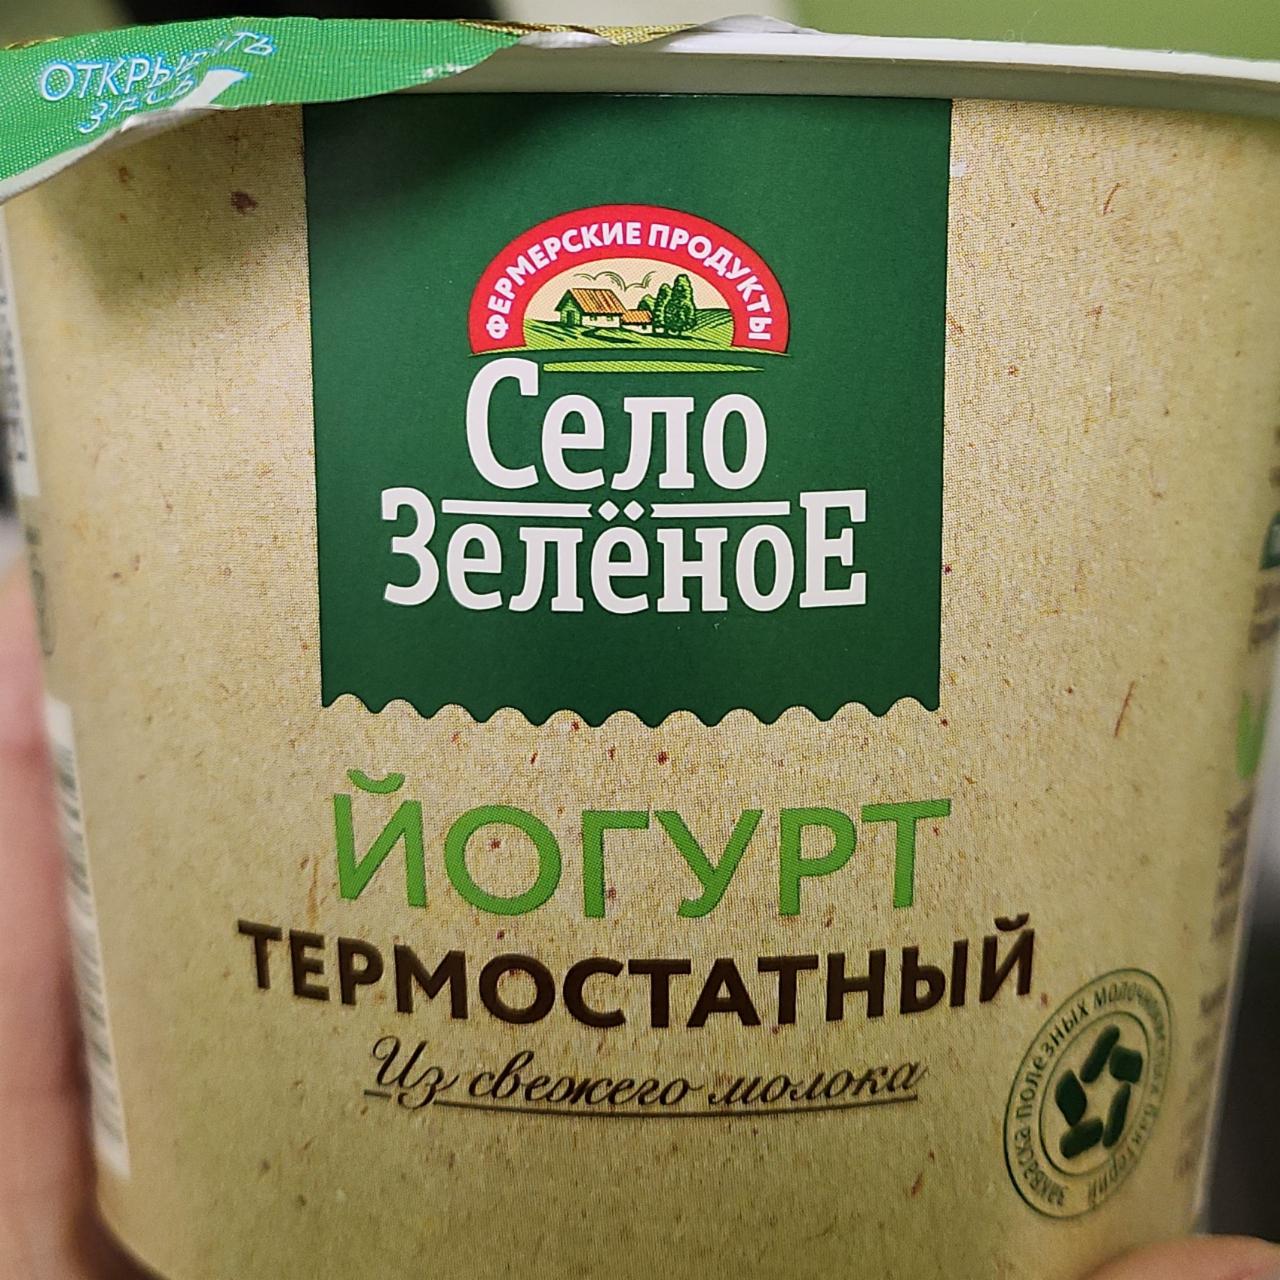 Фото - Йогурт термостатный 4% Село зеленое